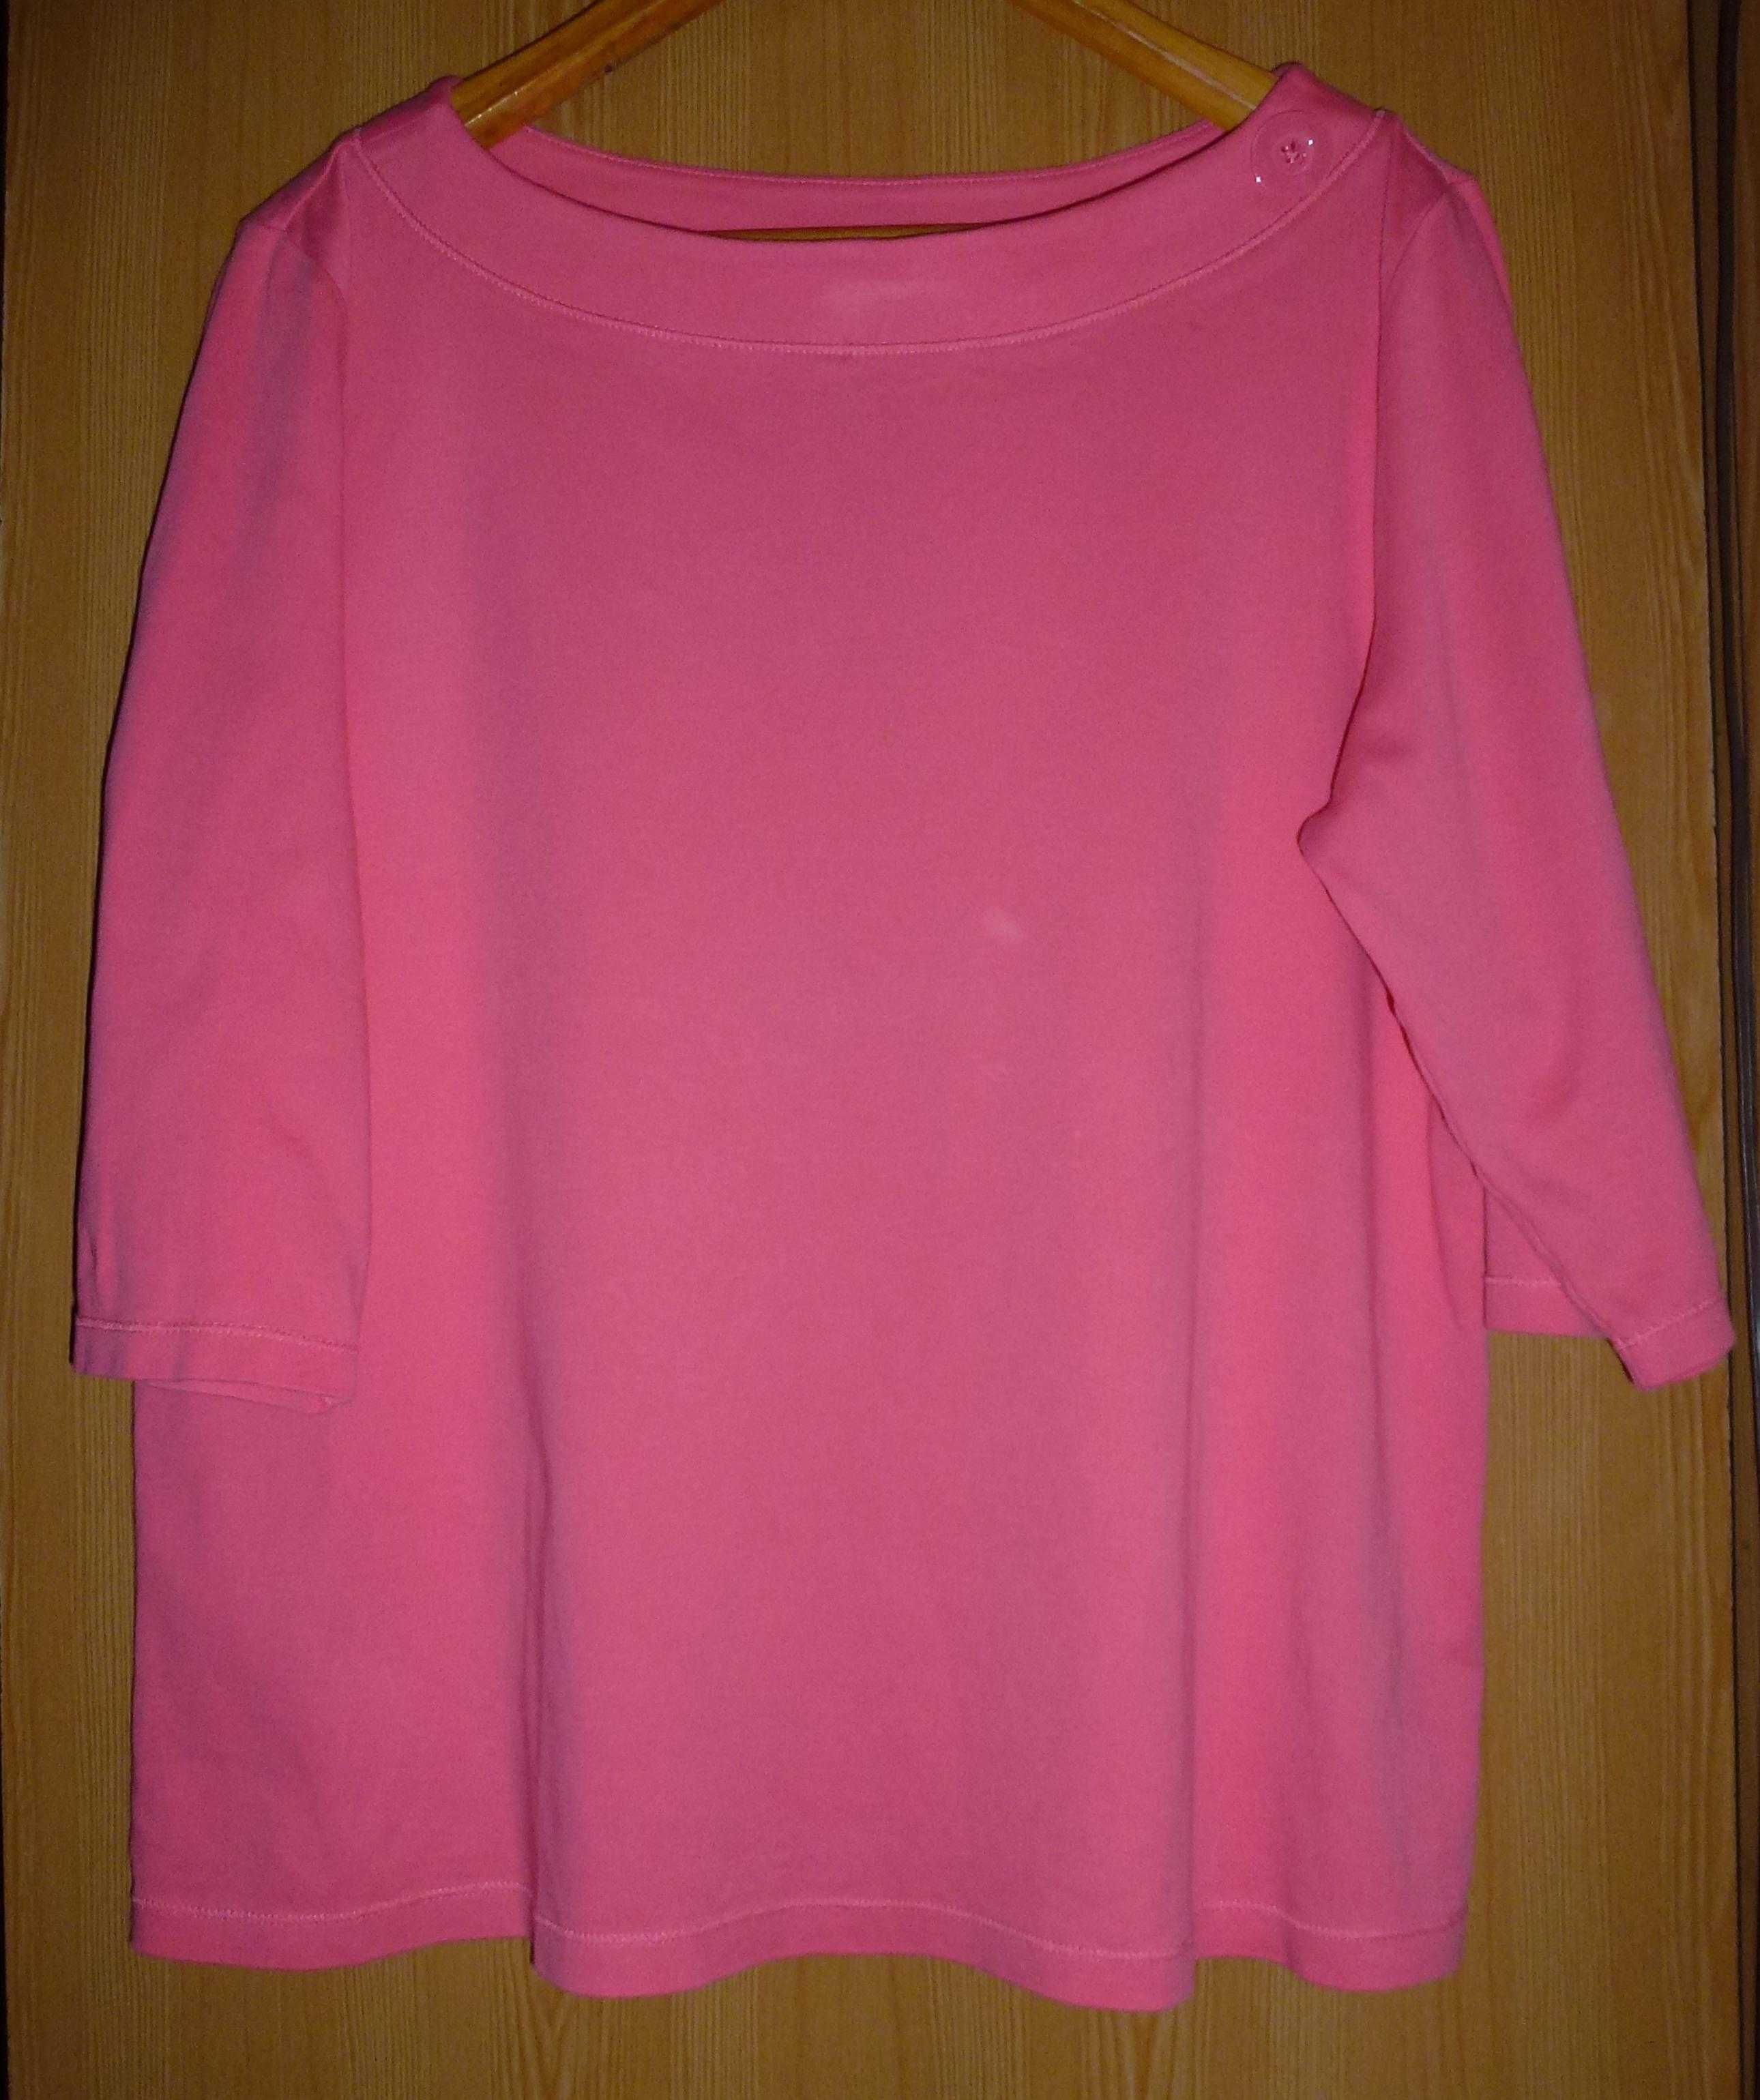 Трикотажная блуза от бренда Marco Pecci. Большой размер